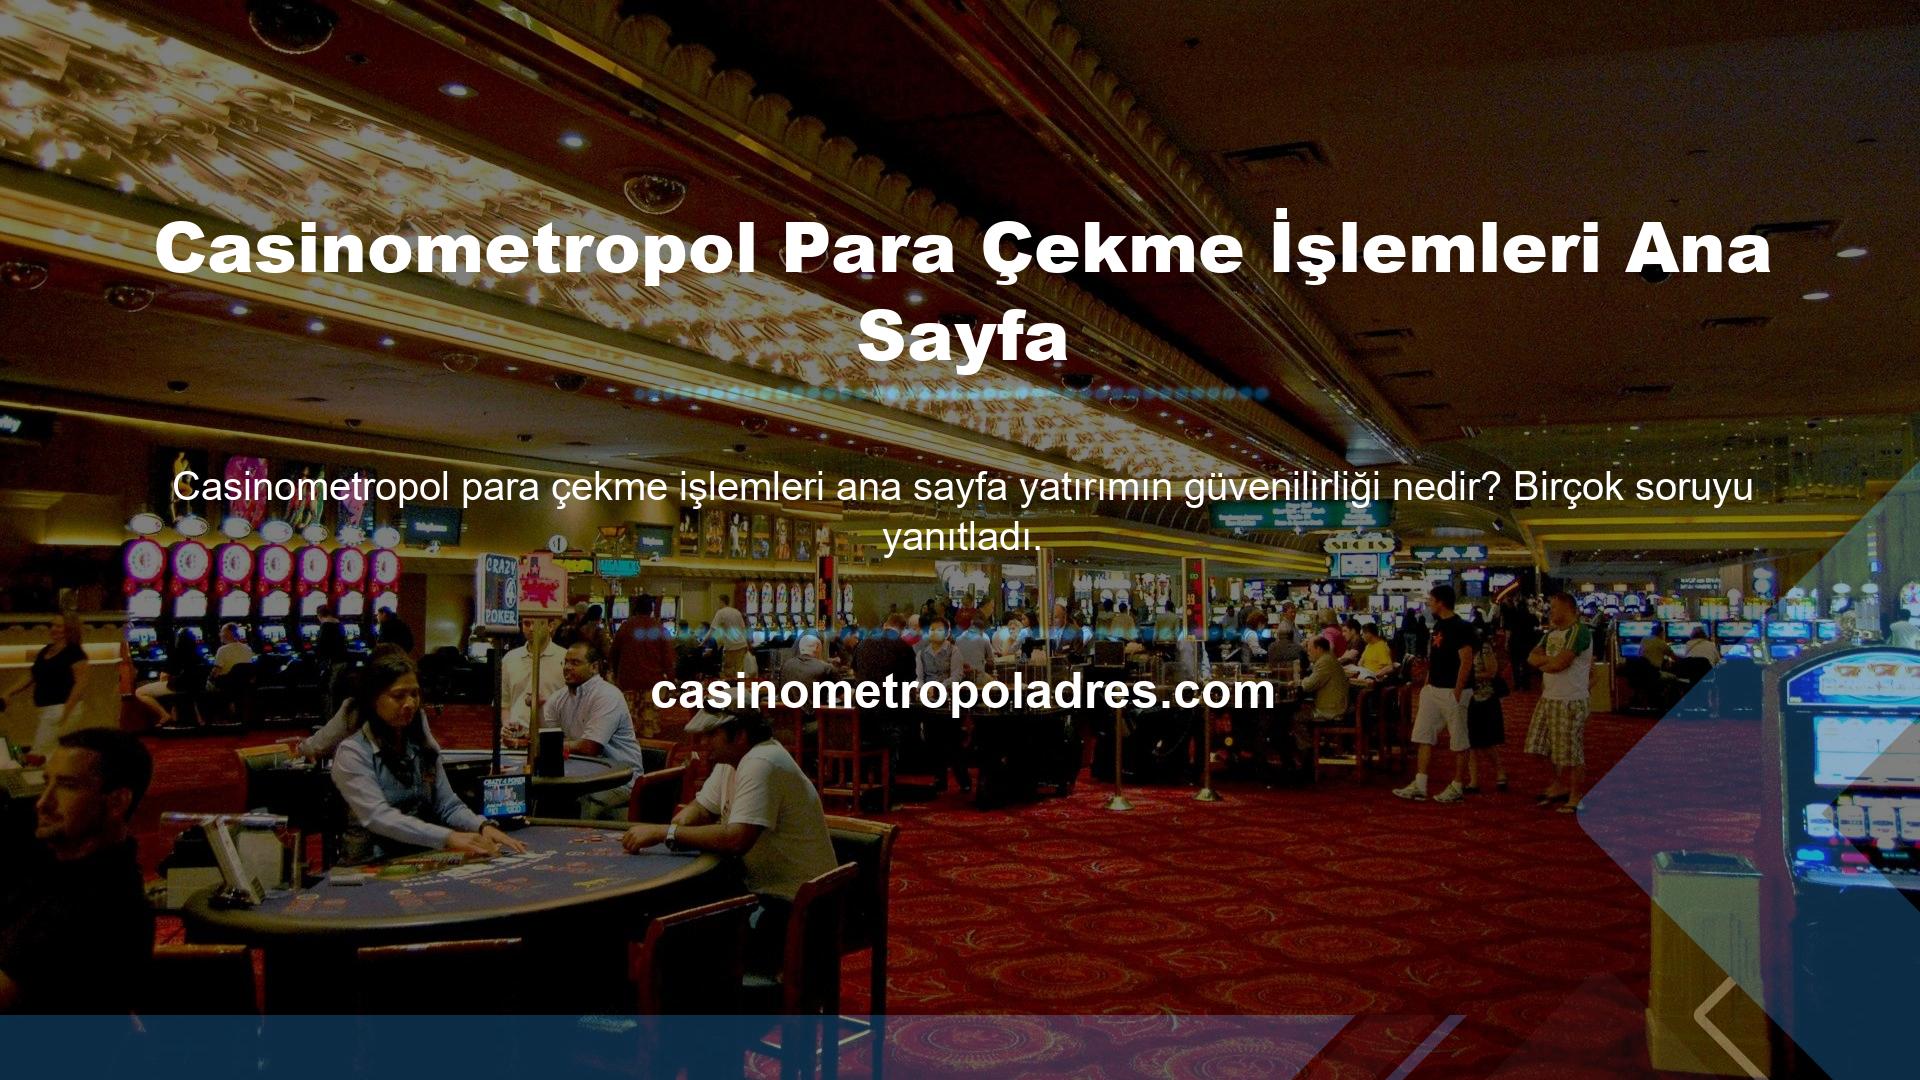 Hangi yöntemi kullanmalıyım? Casinometropol için ödeme yapmanın yolları nelerdir? Casinometropol için ödeme yapmanın yolları nelerdir? Bir bahis sitesine yatırım yaparken ne kadar yatırım yapacağınıza karar vermek önemlidir